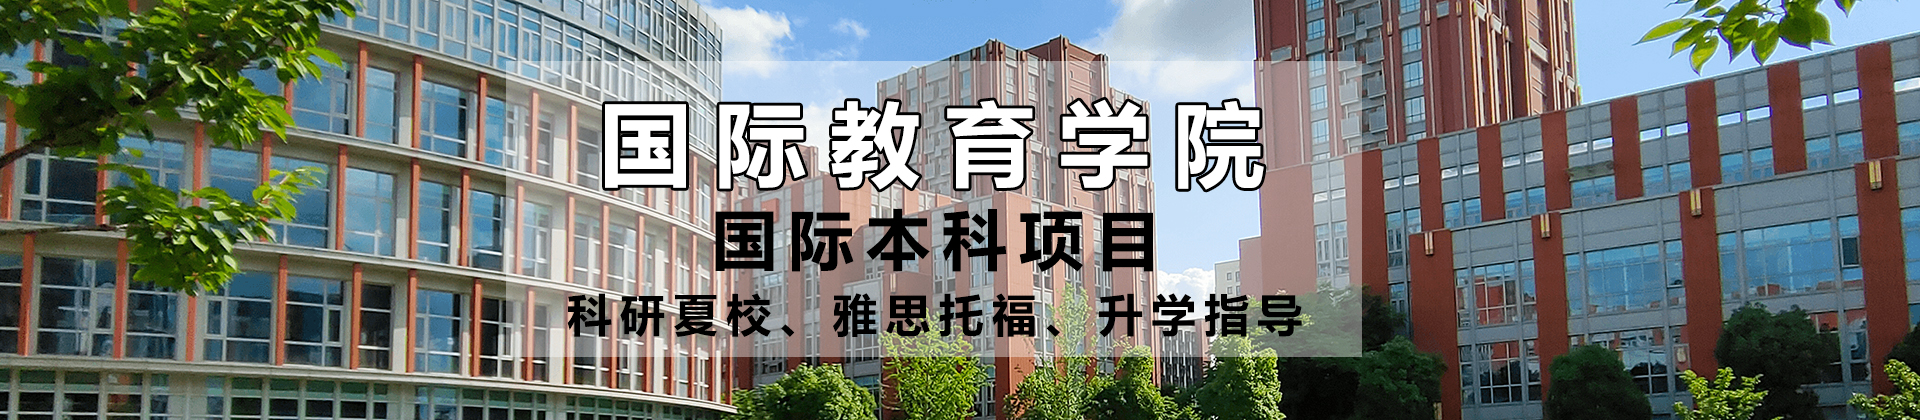 上海紫竹国际教育